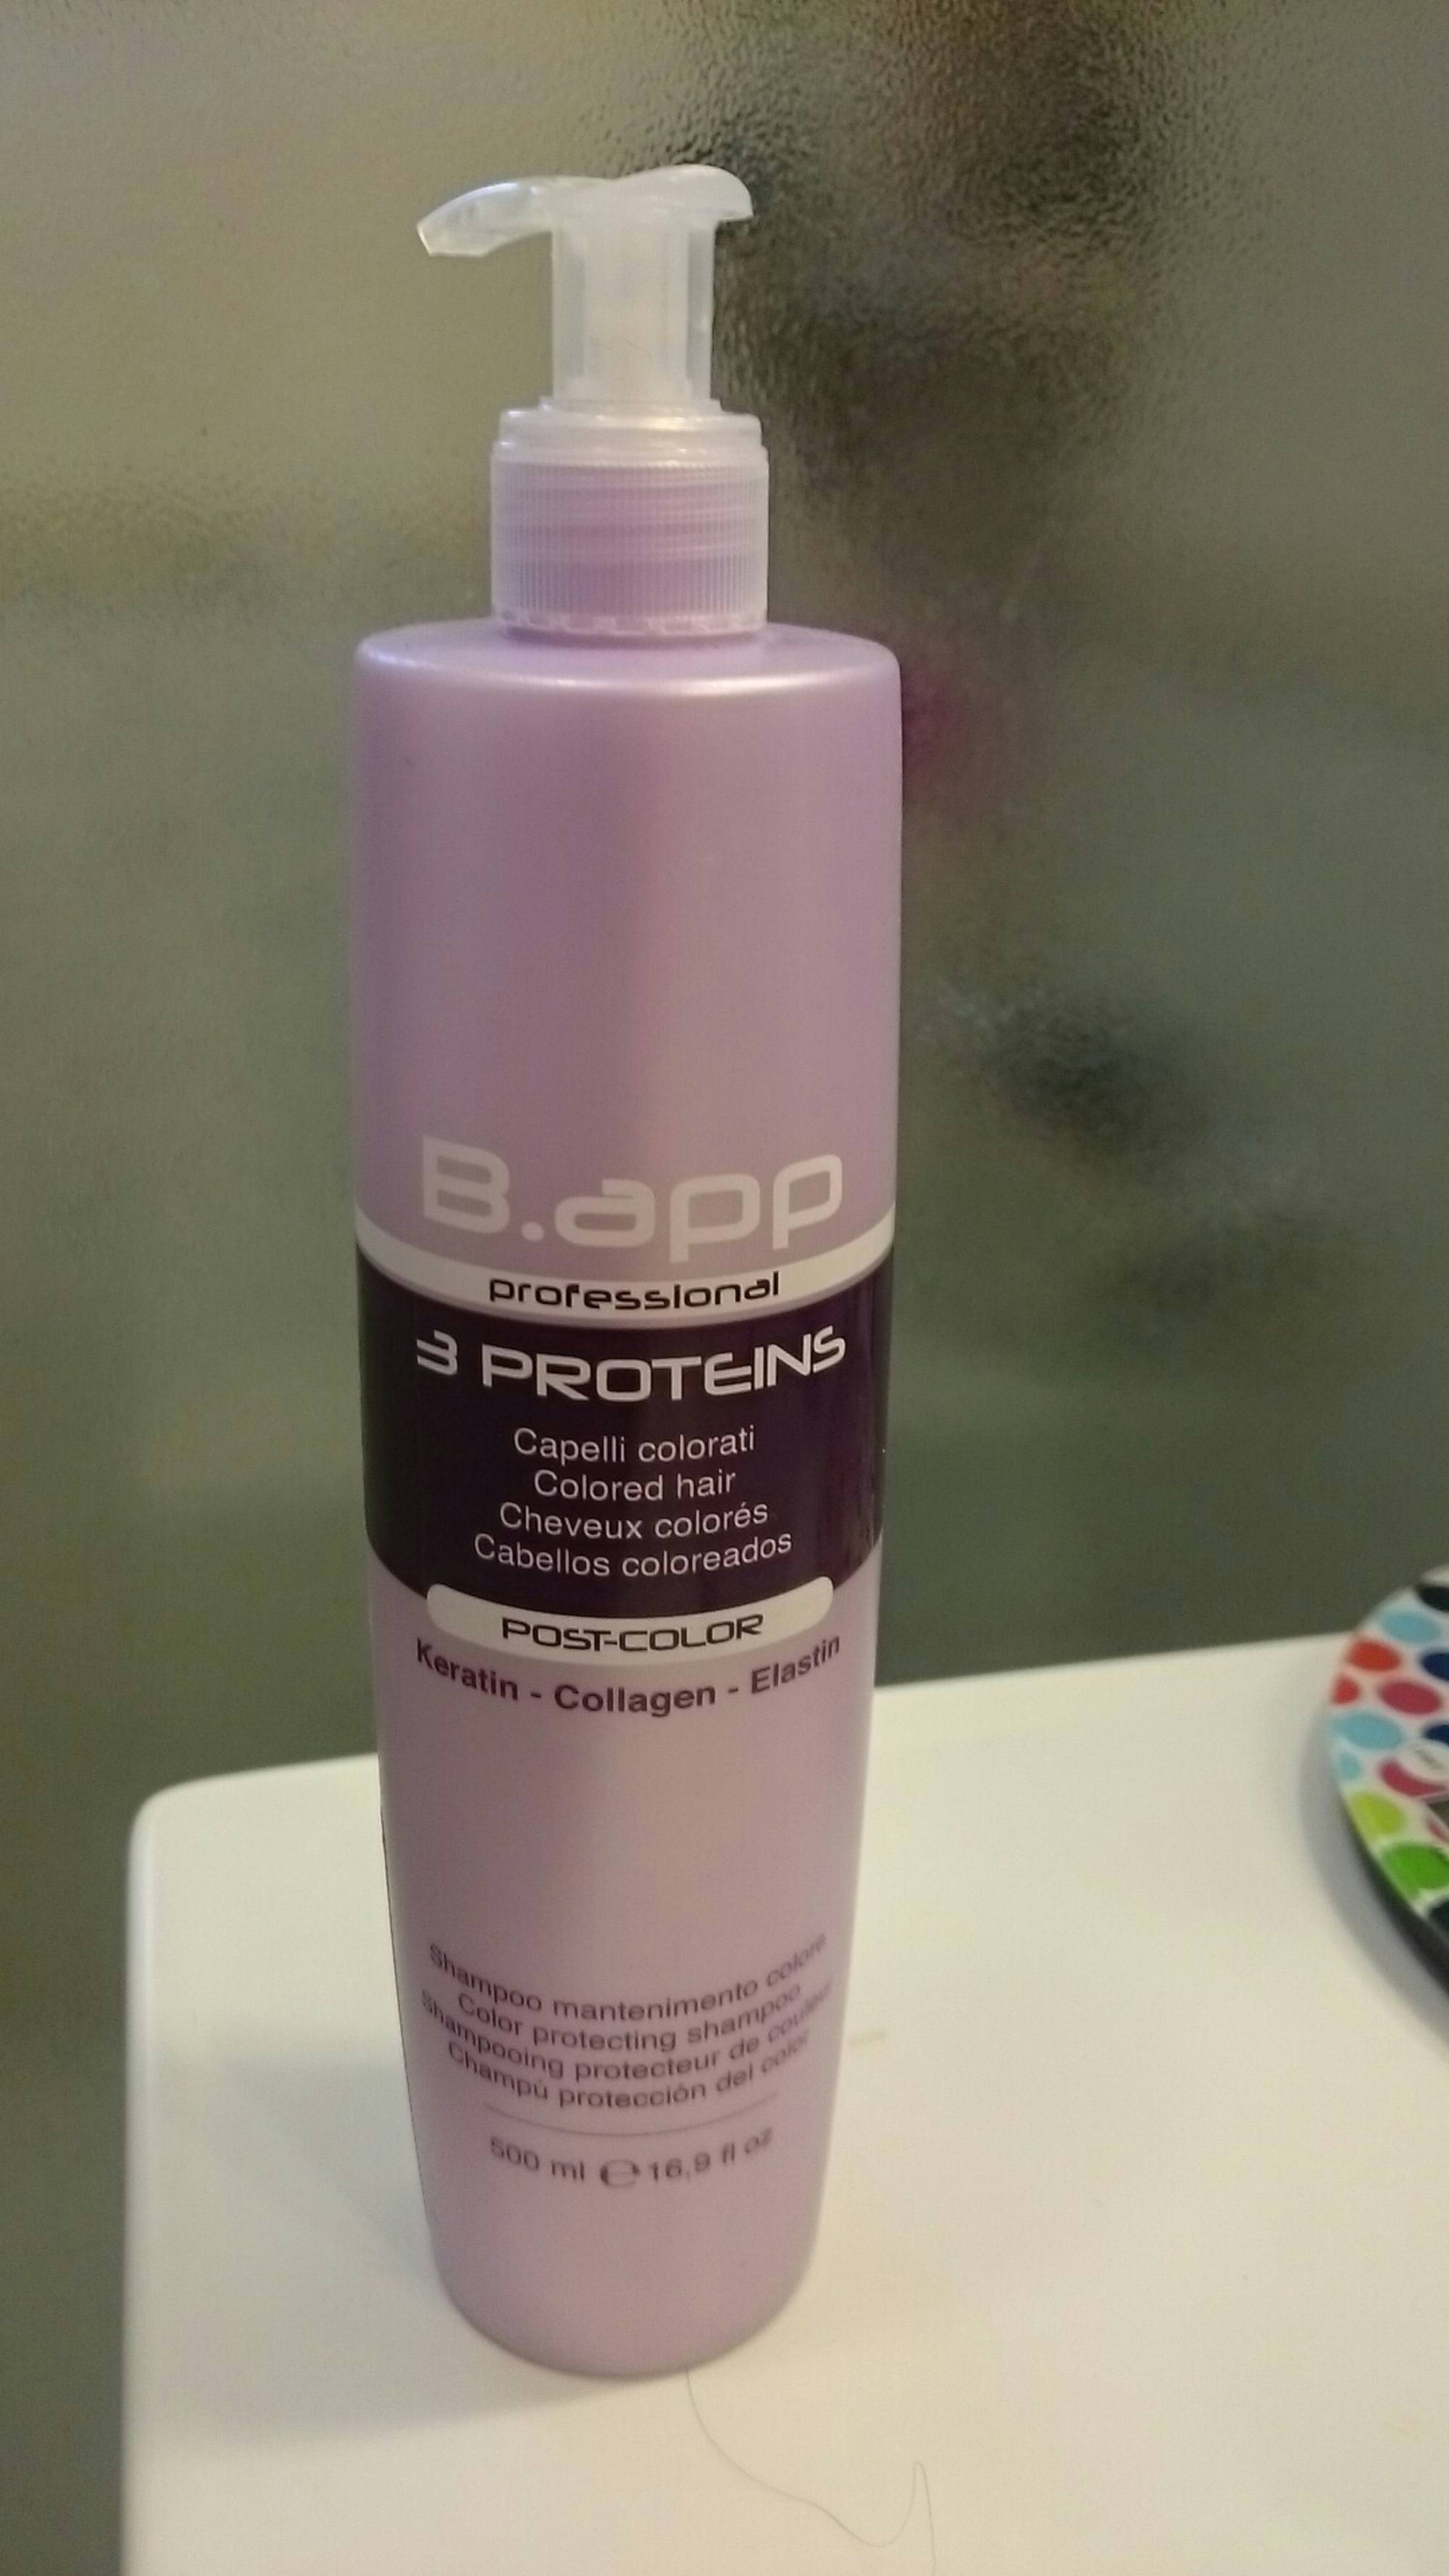 B.APP - Post color - Shampooing protecteur de couleur